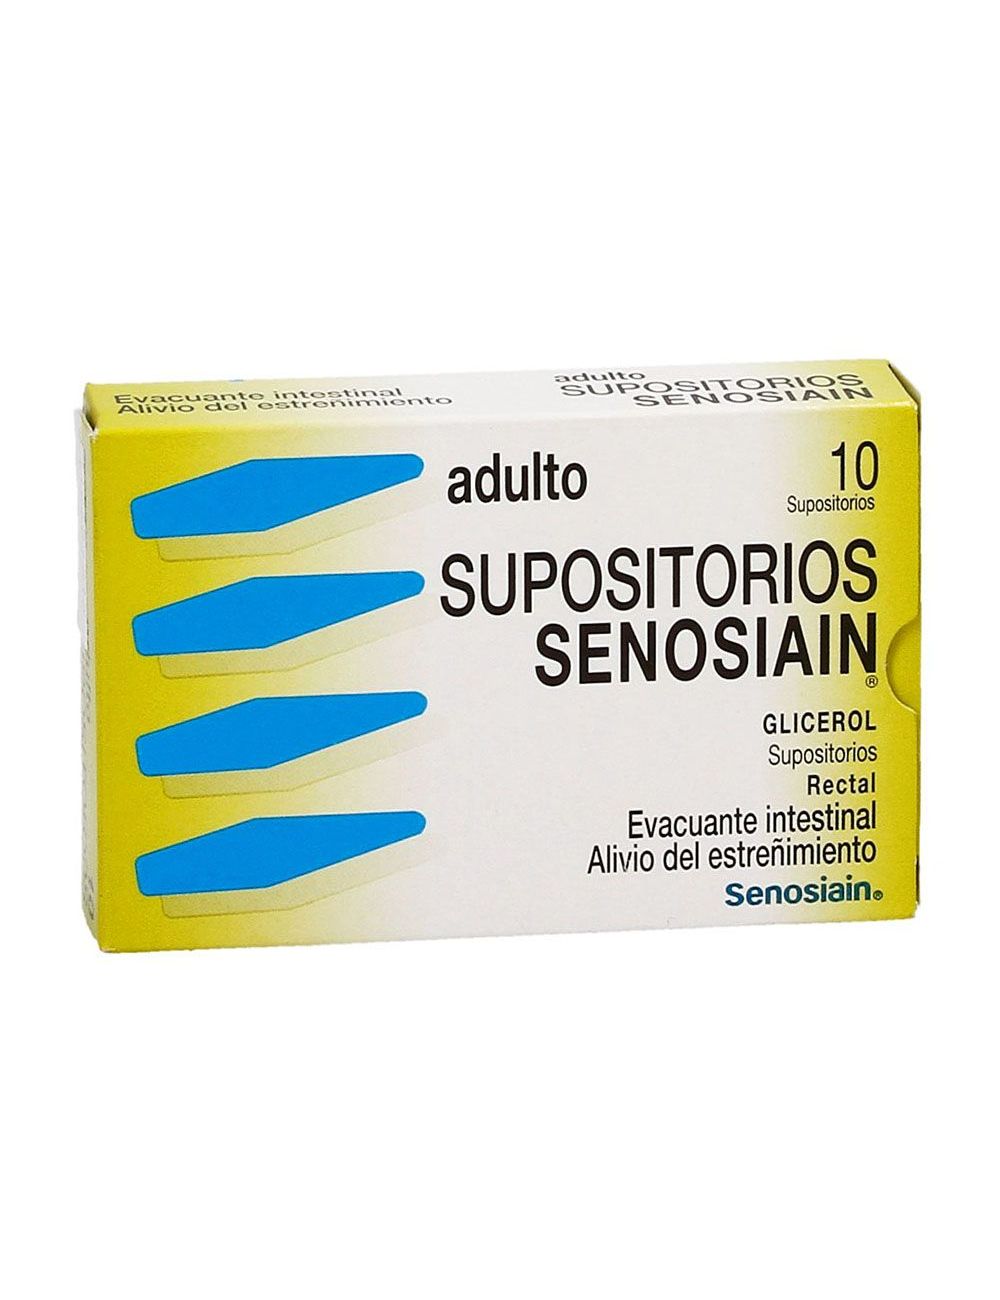 https://www.farmalisto.com.mx/98246-large_default/comprar-senosian-adulto-caja-con-10-supositorios-precio.jpg